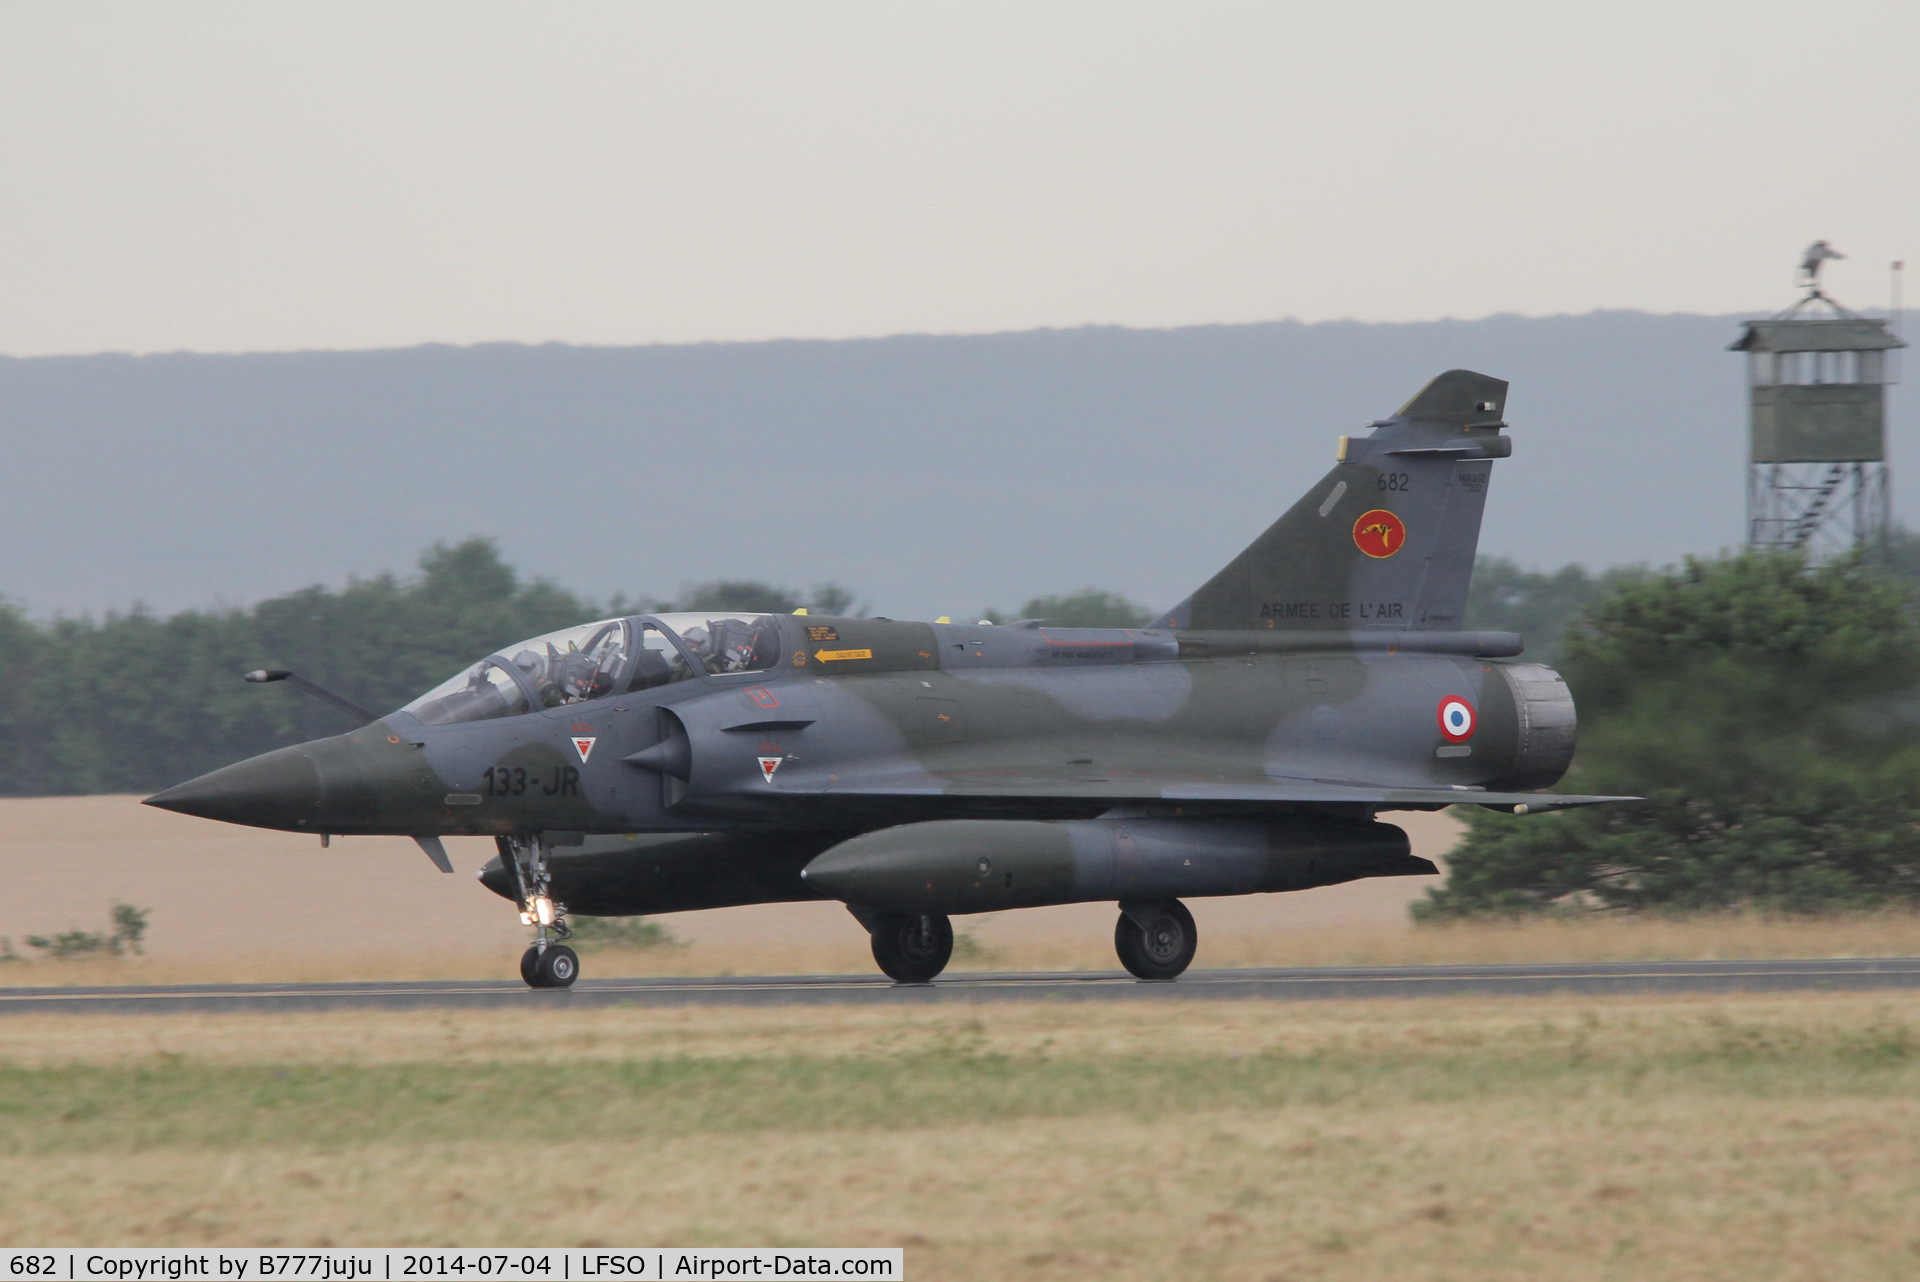 682, Dassault Mirage 2000D C/N 682, at Nancy-Ochey